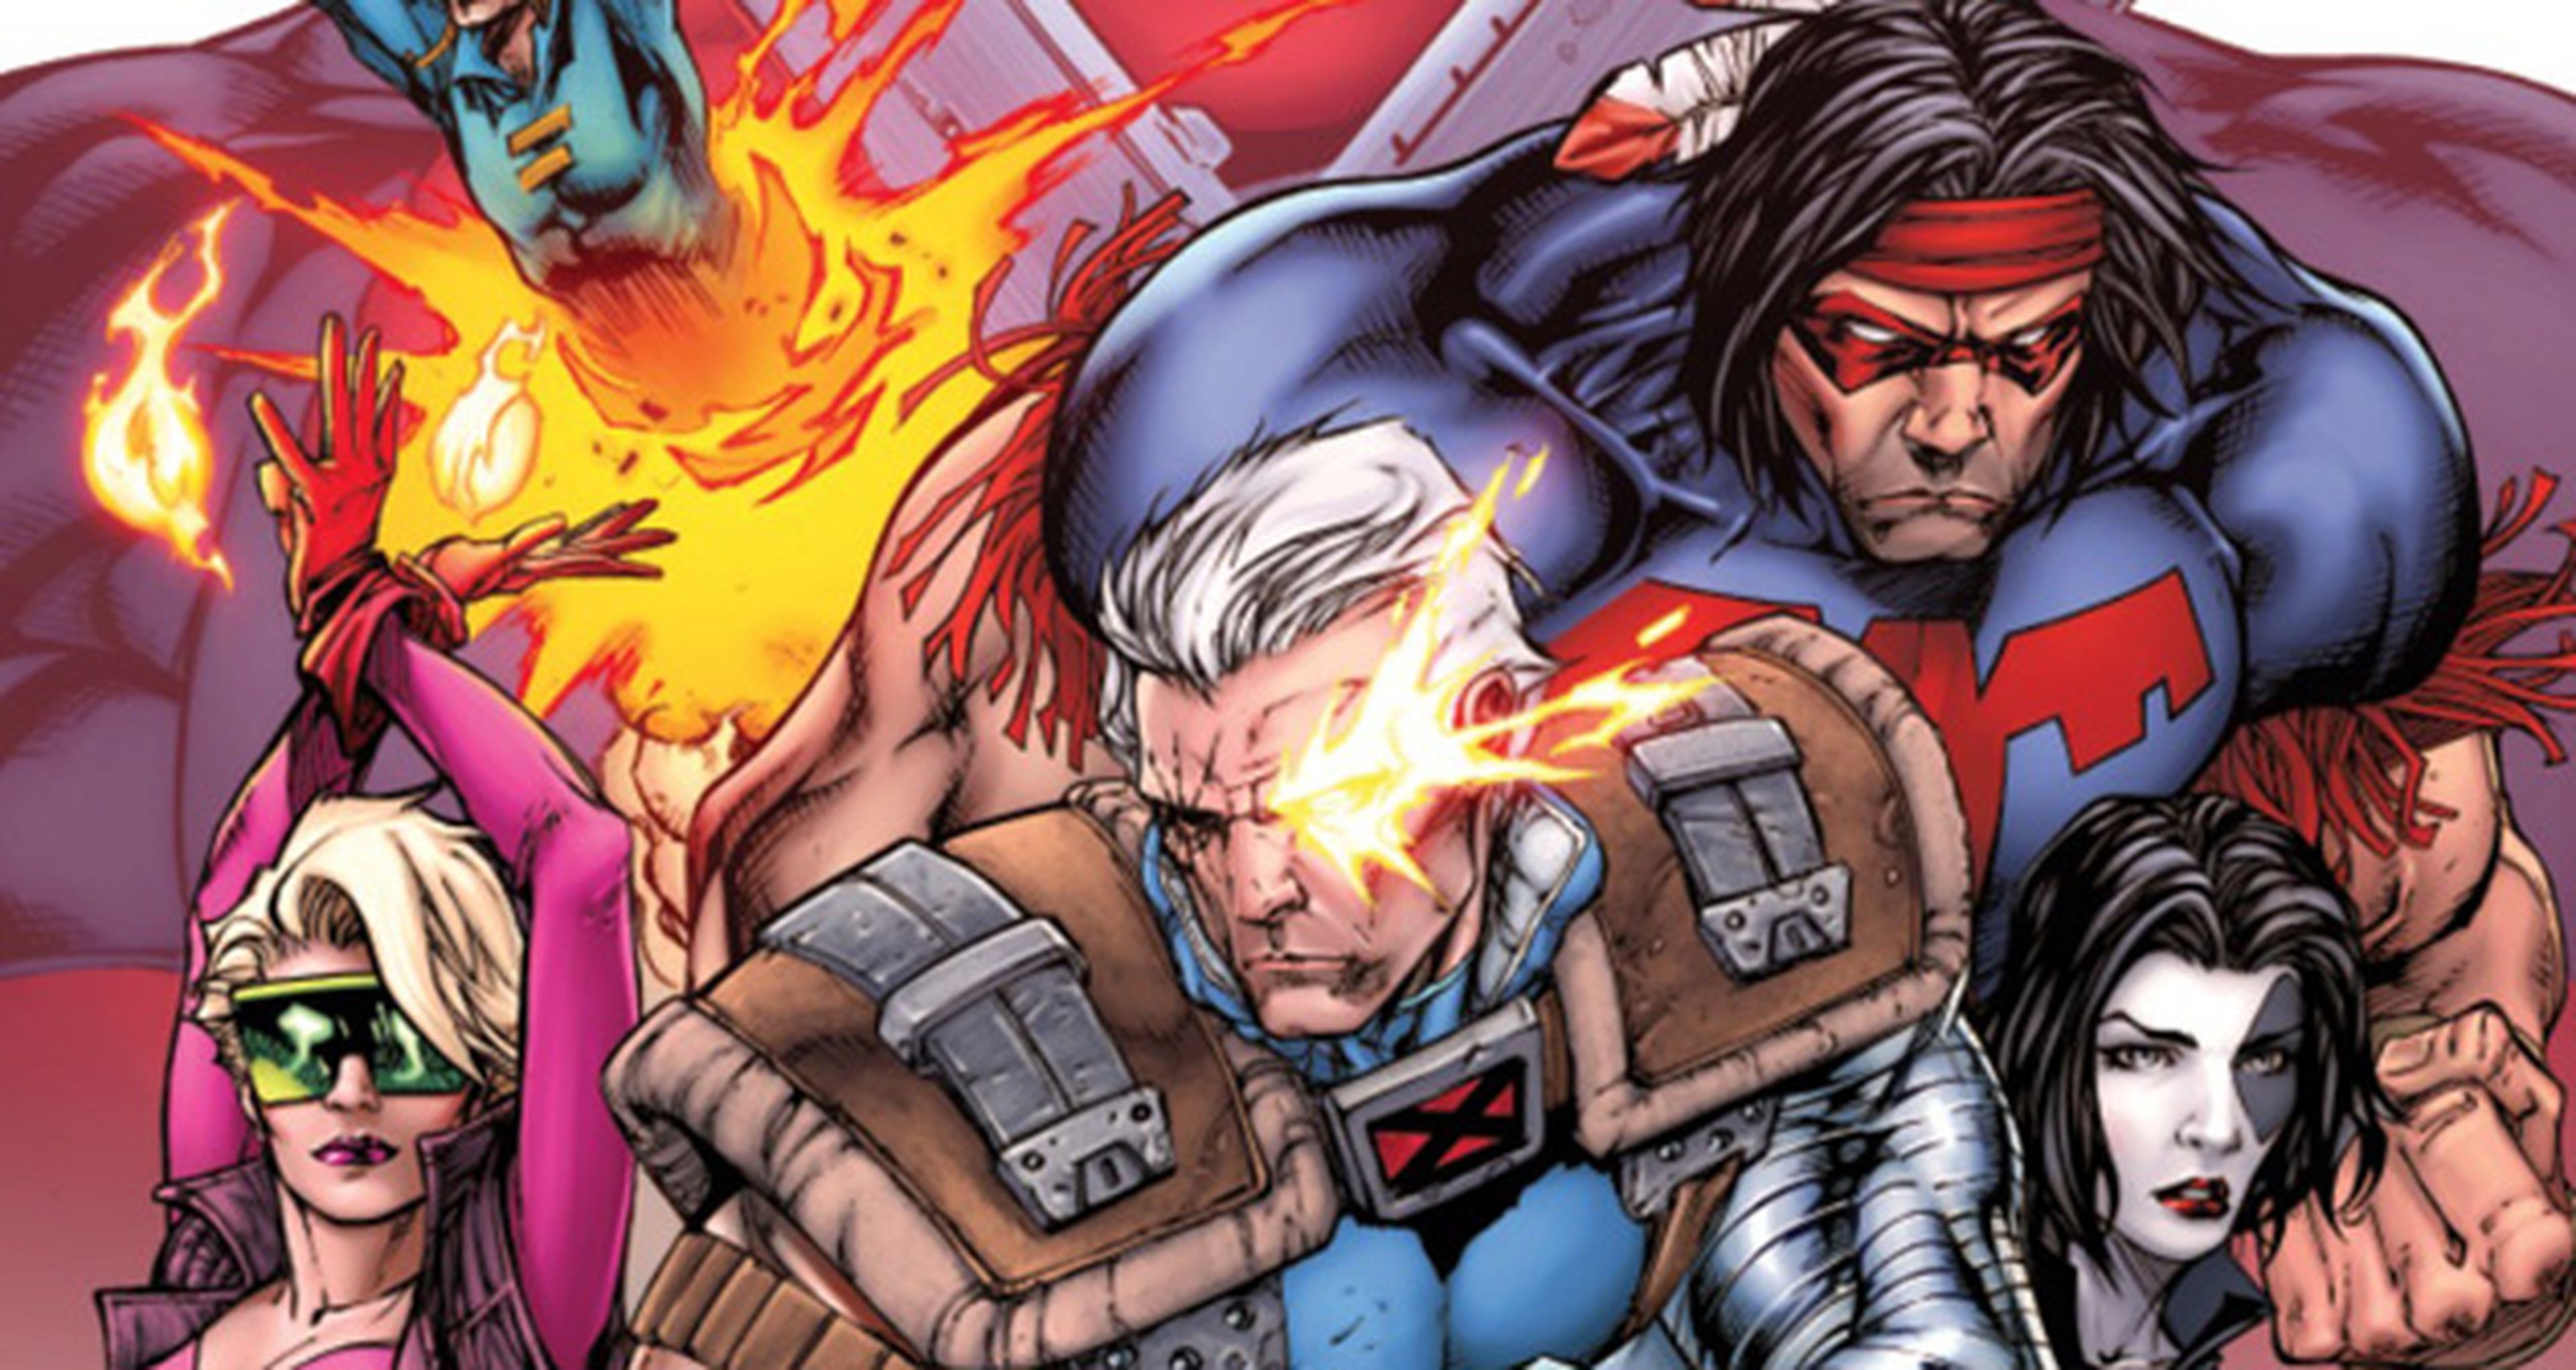 Masacre vs. X-Force, duelo en los cómics una vez más